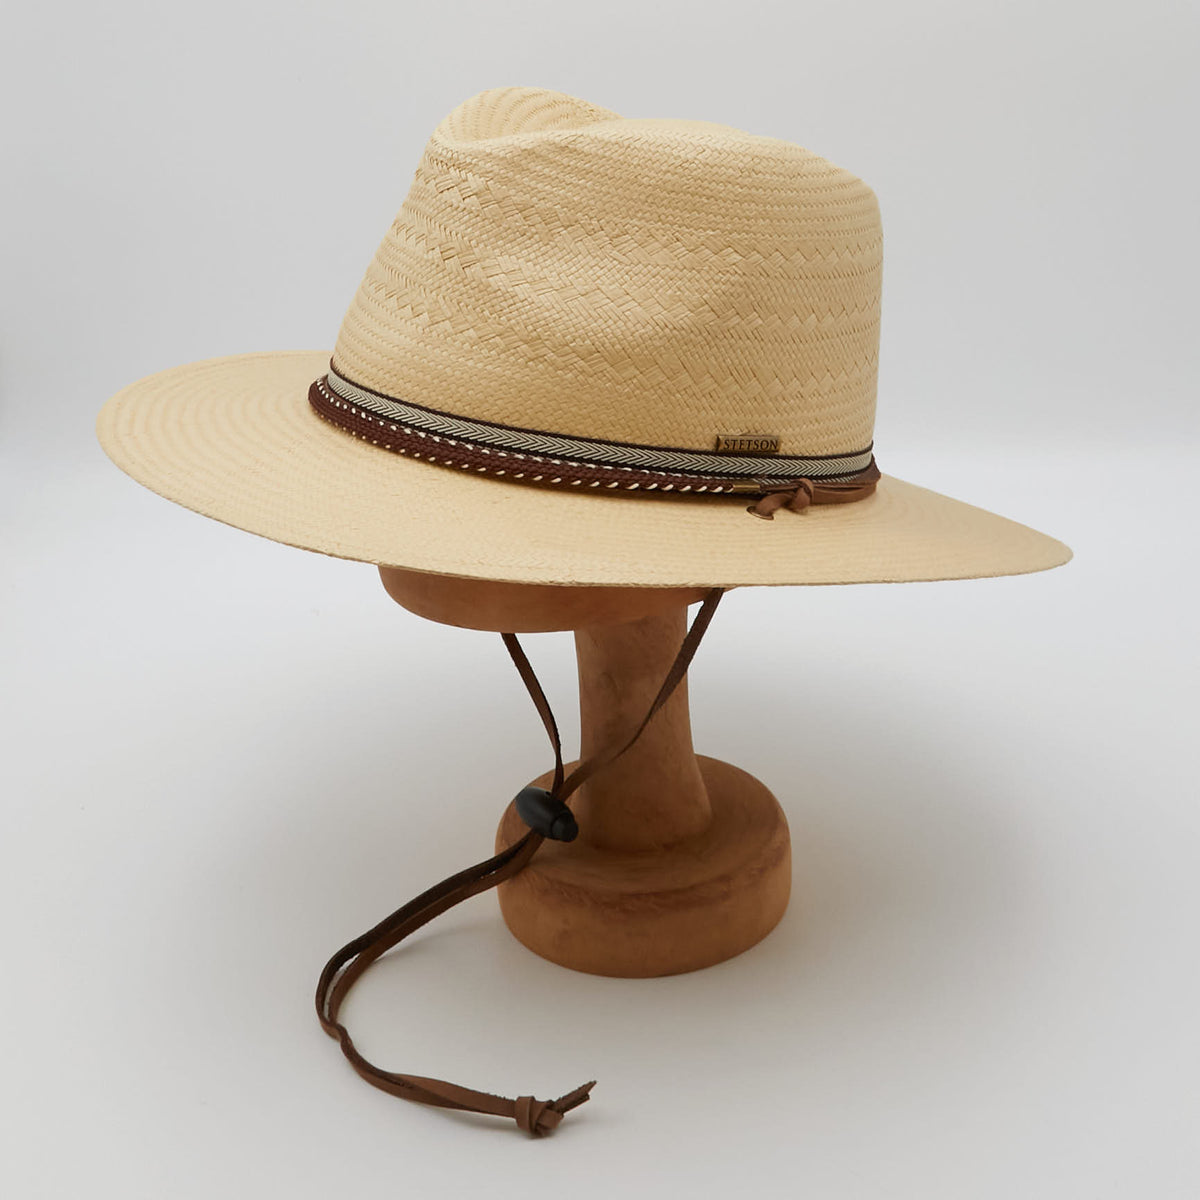 Stetson Traveller Western Inspired Straw Hat Chin Strap UNISEX